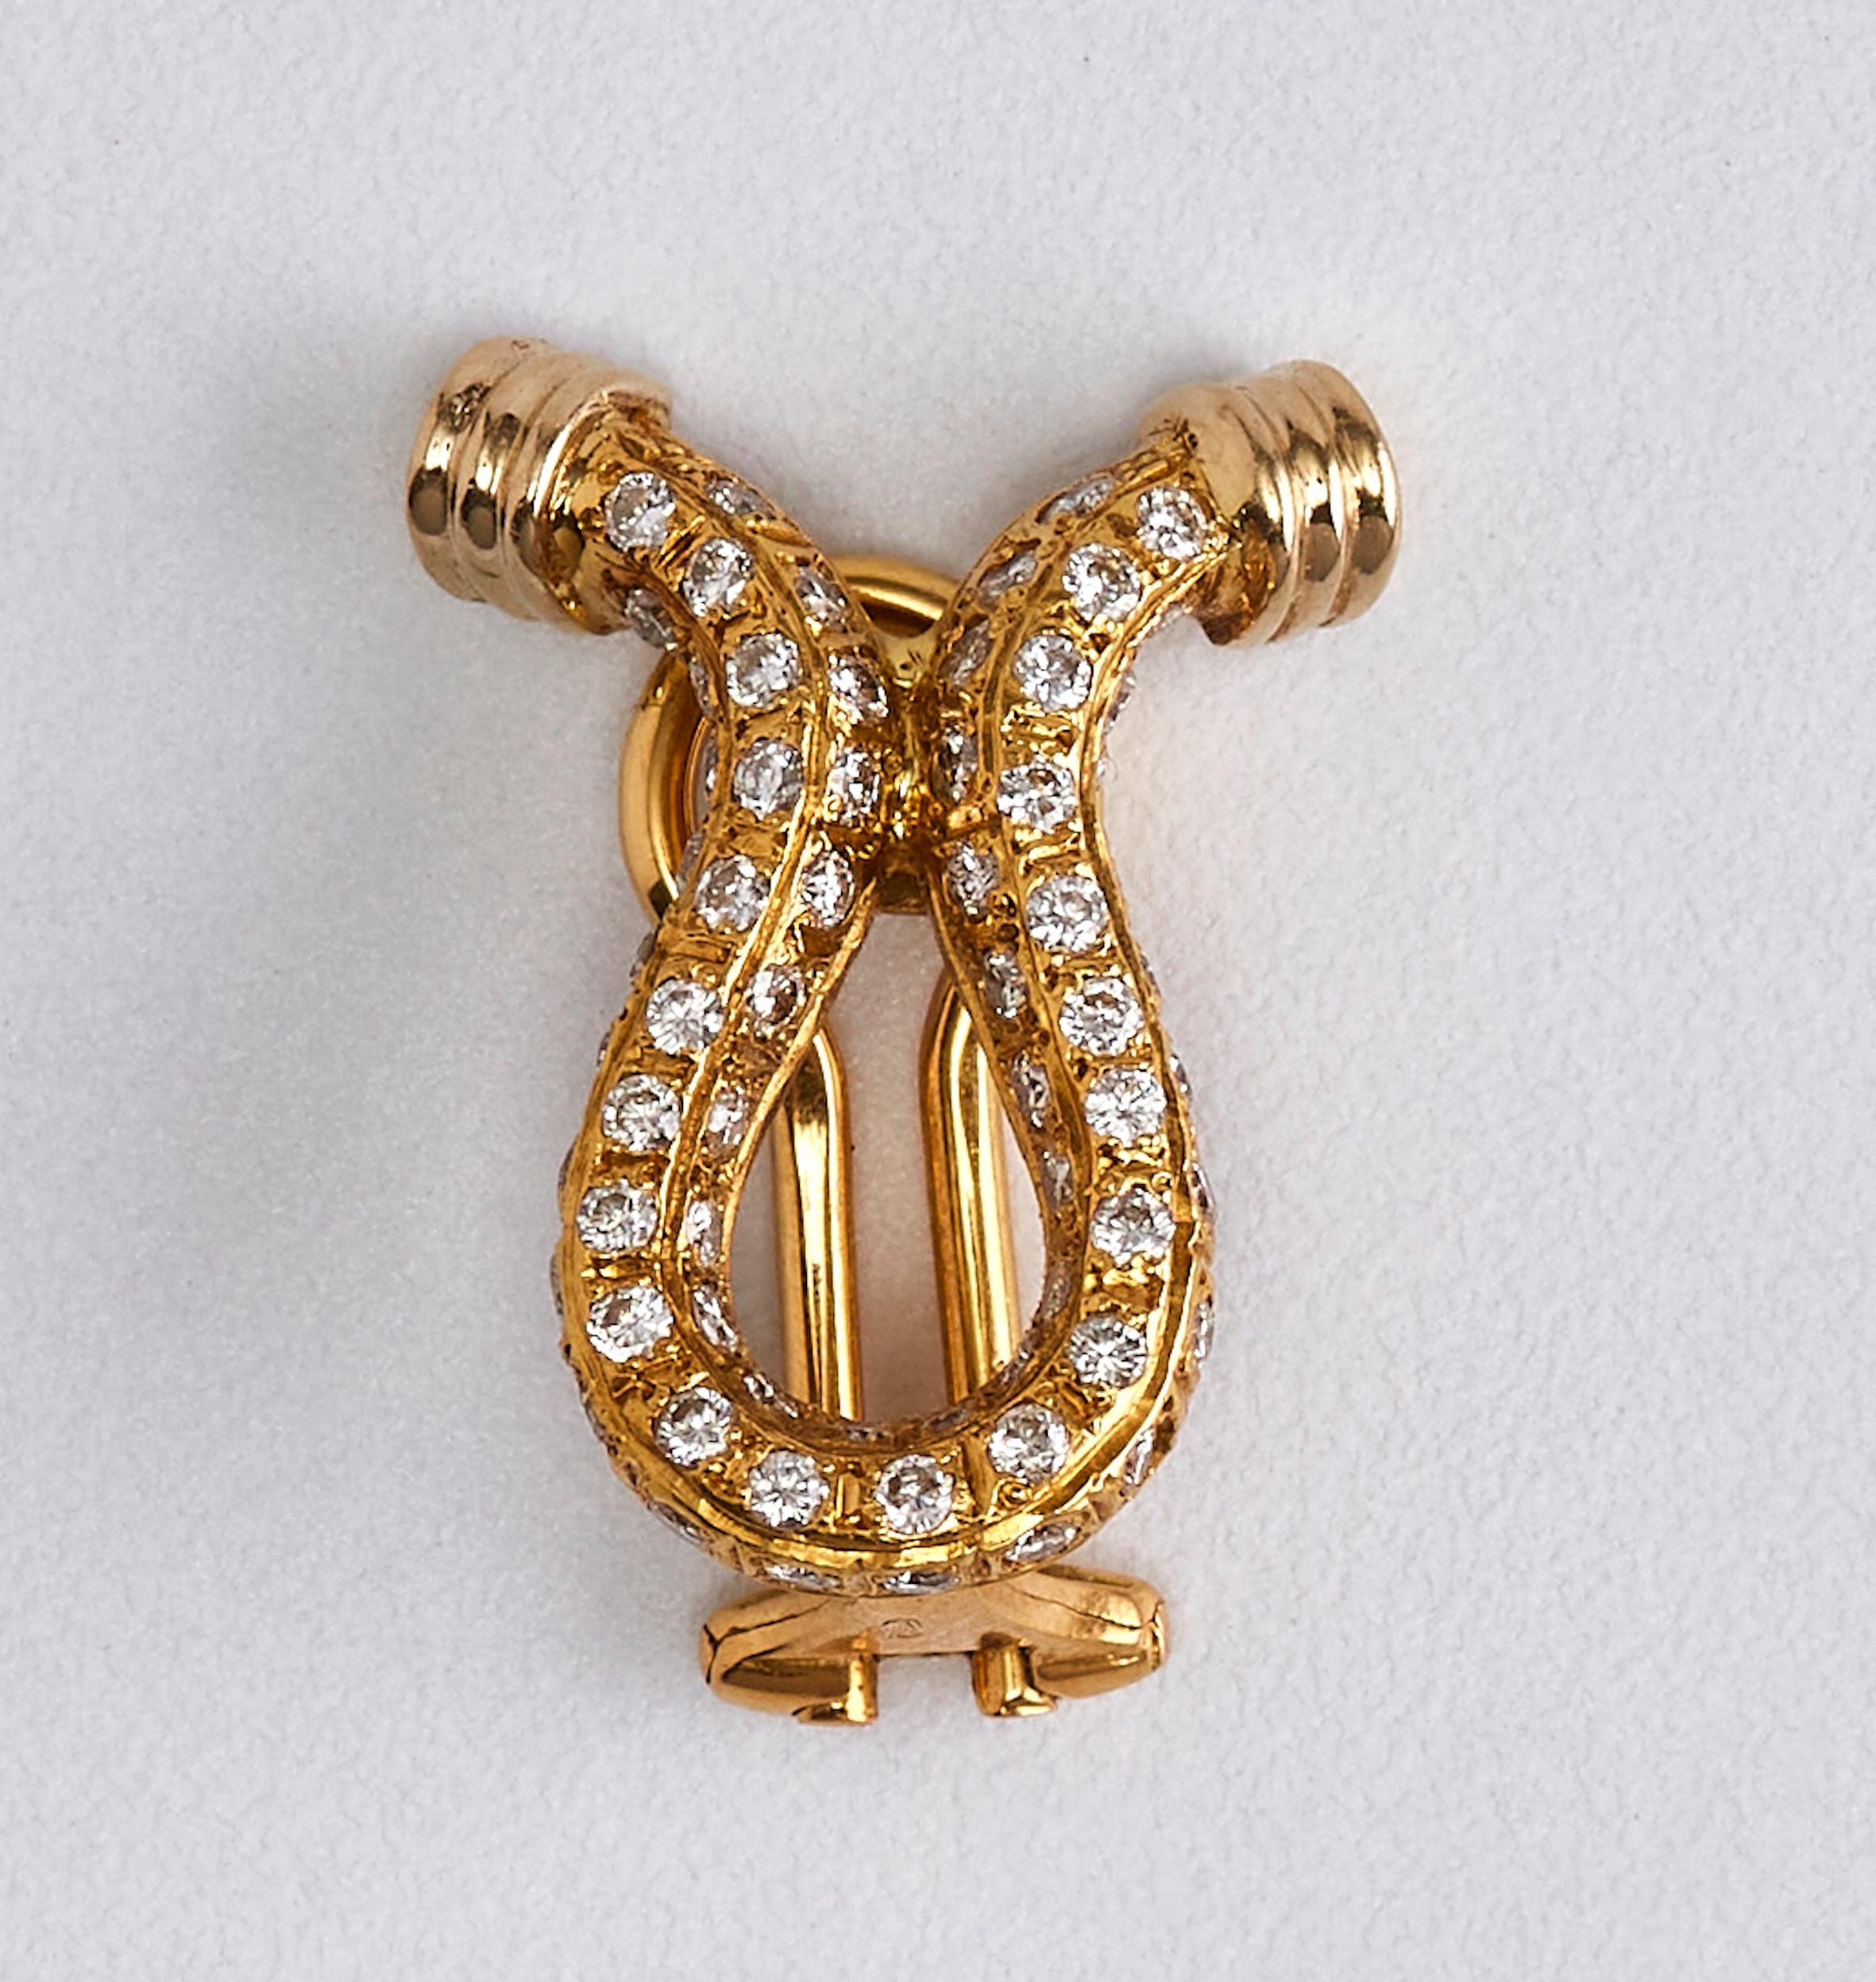 Paar Omega-förmige Diamant-Ohrringe aus 18k Gelbgold

Wunderschönes Paar, besetzt mit runden Diamanten in der Omega-Form des Ohrrings. 
18 Karat Gold mit 2,88 Karat Diamanten im Rundschliff G VS1.
Hergestellt in den 1970er Jahren in Italien.